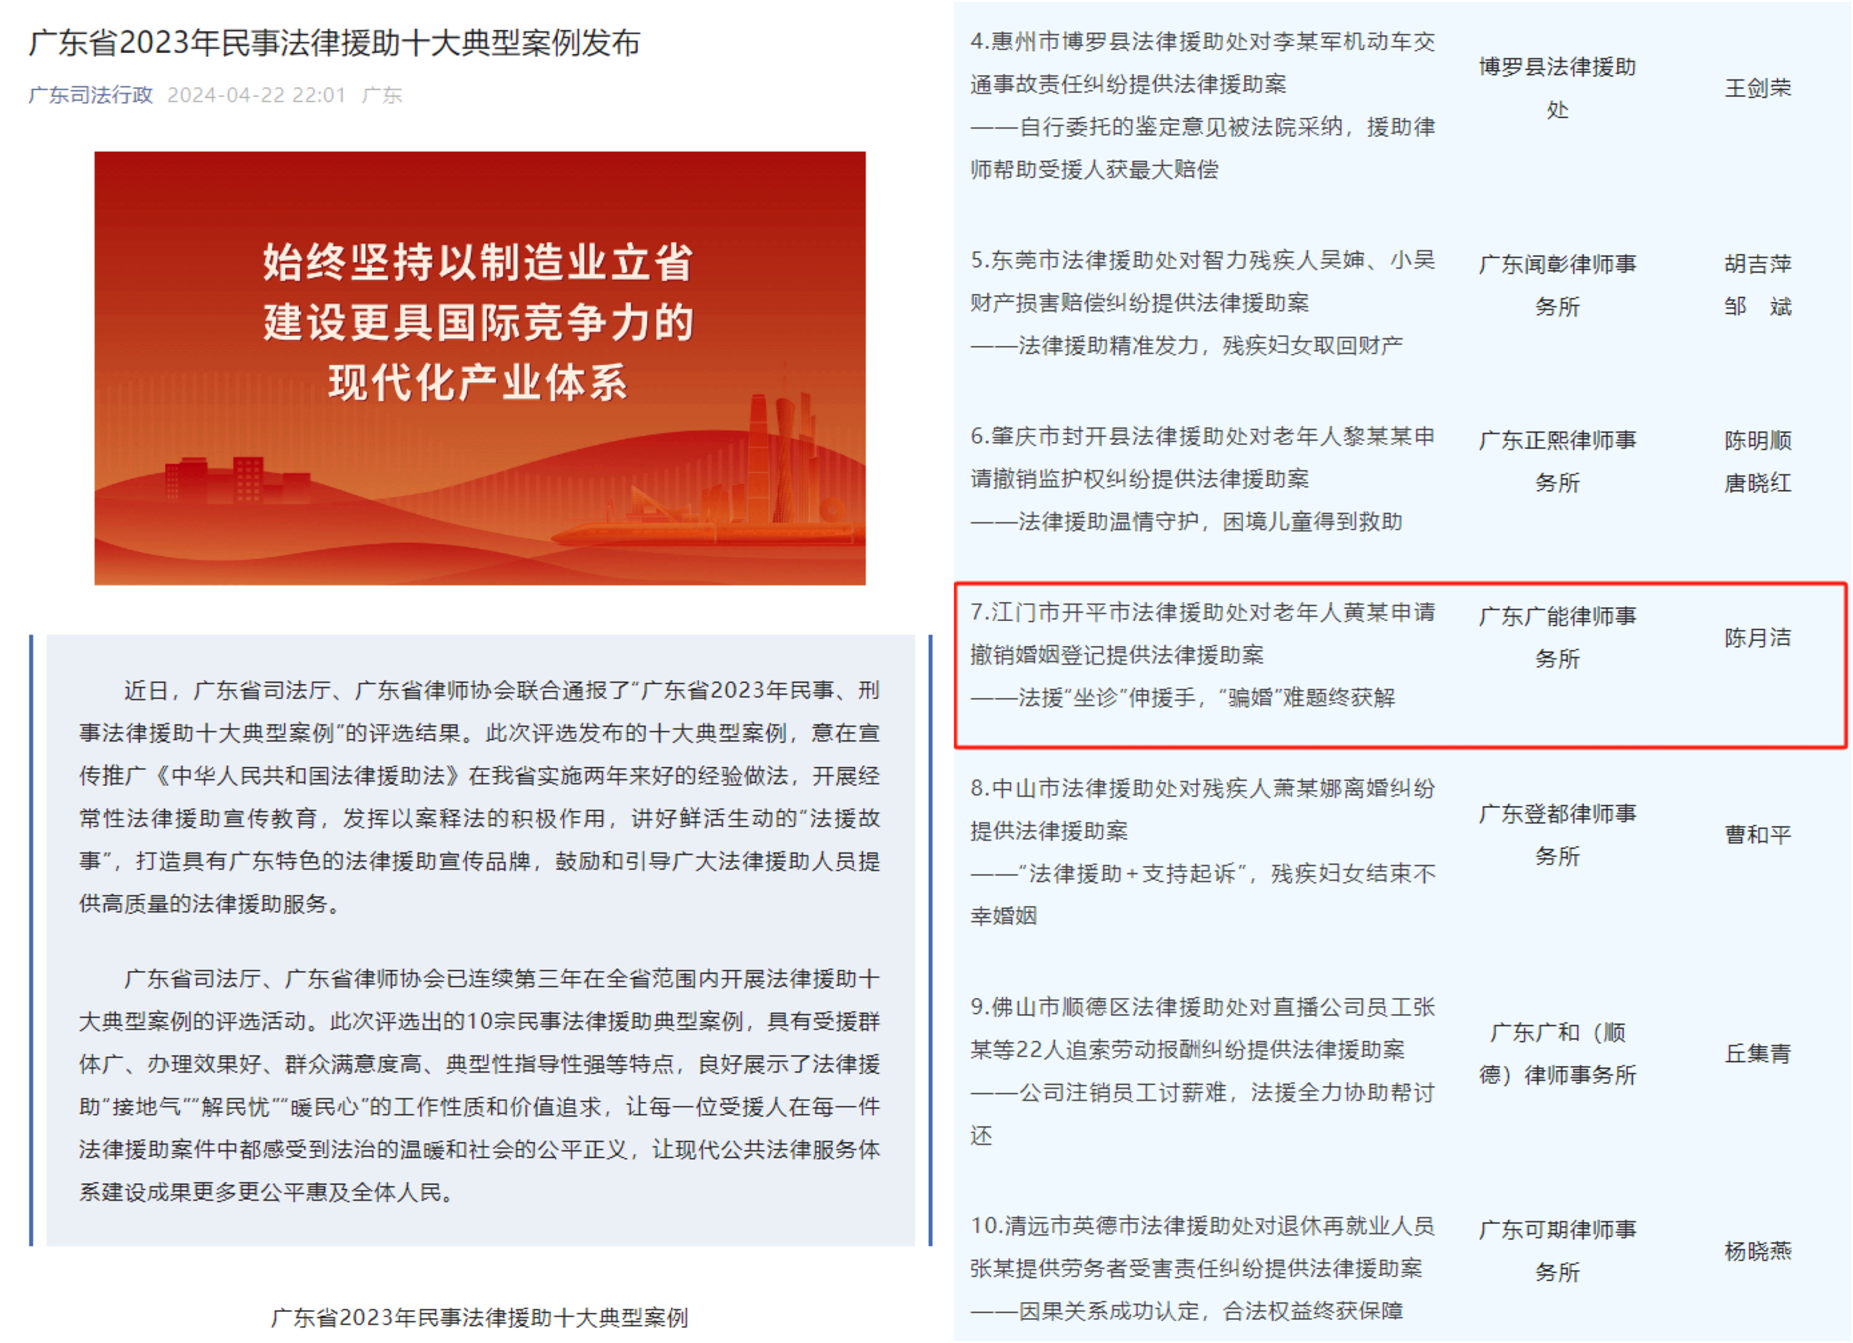 开平市法律援助案例入选广东省2023年民事法律援助十大典型案例